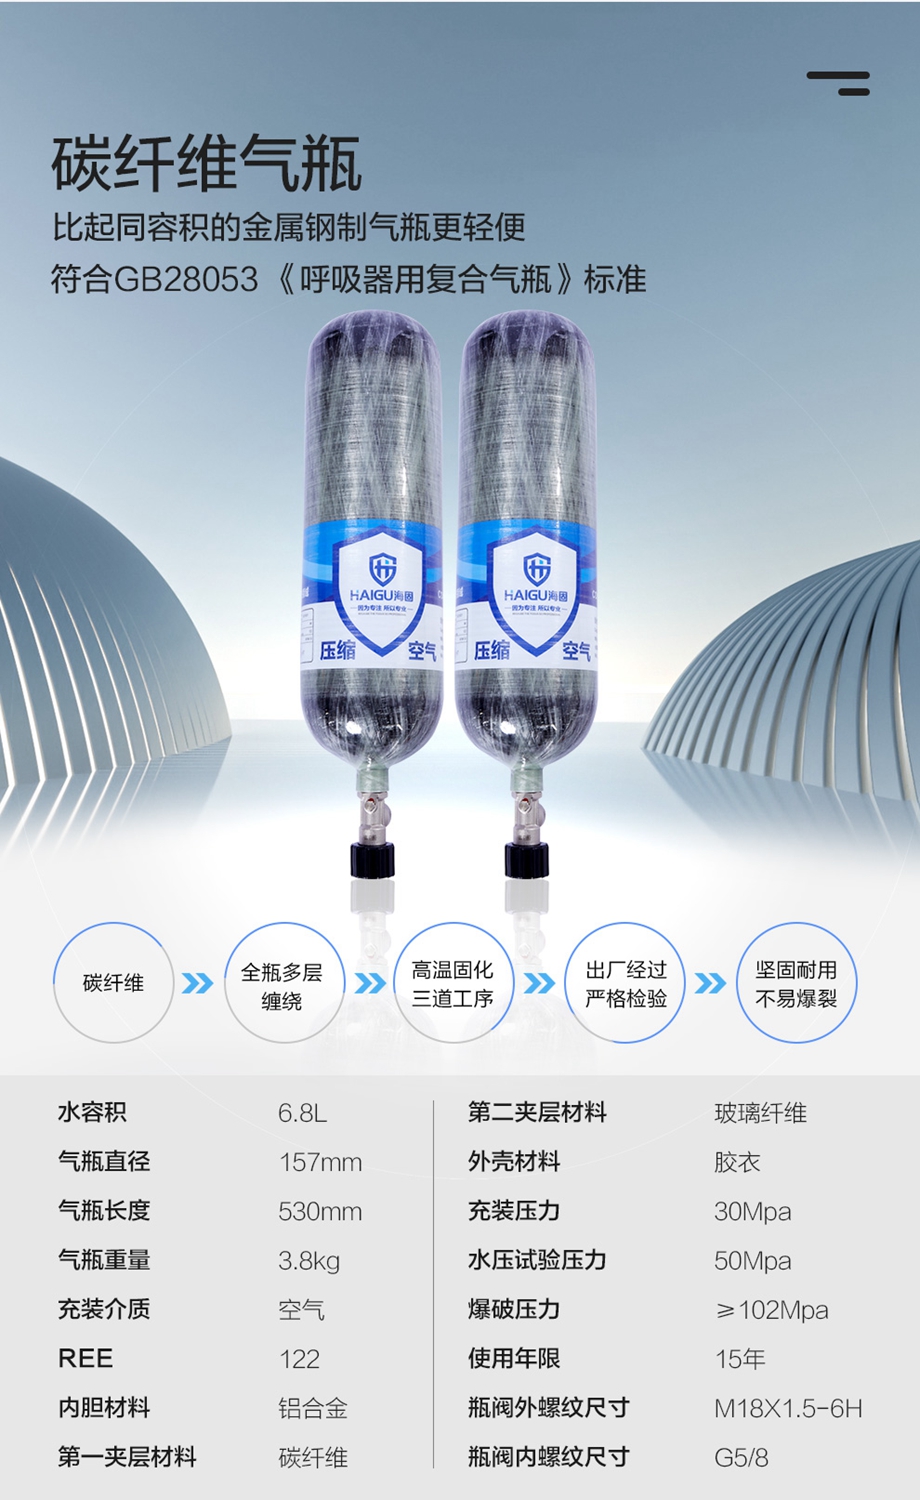 海固RHZKF6.8/30 正压式空气呼吸器 抬头显示+快充功能 碳纤维复合气瓶